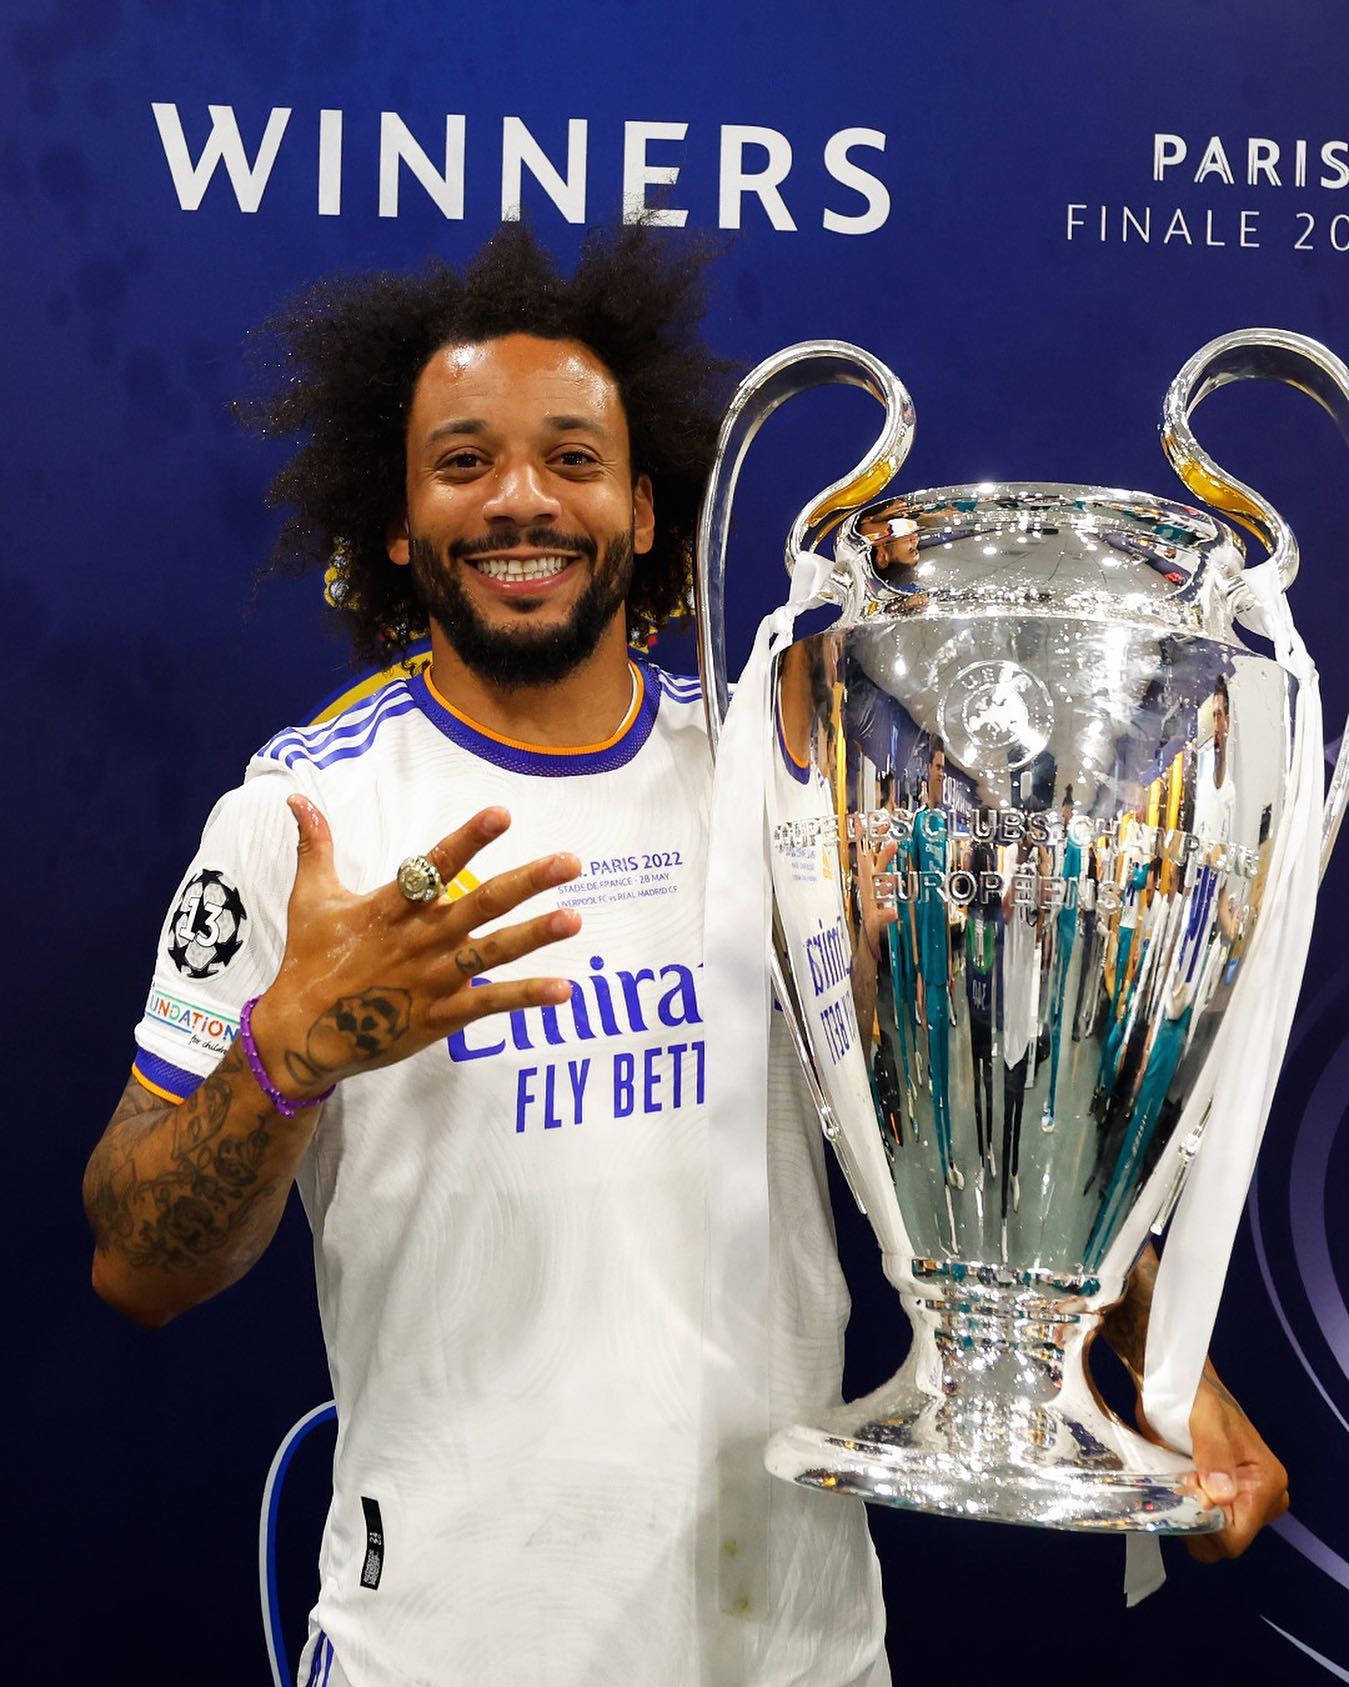 Real Madrid campeão - Champions 2021/22. Foto: Reprodução / Instagram